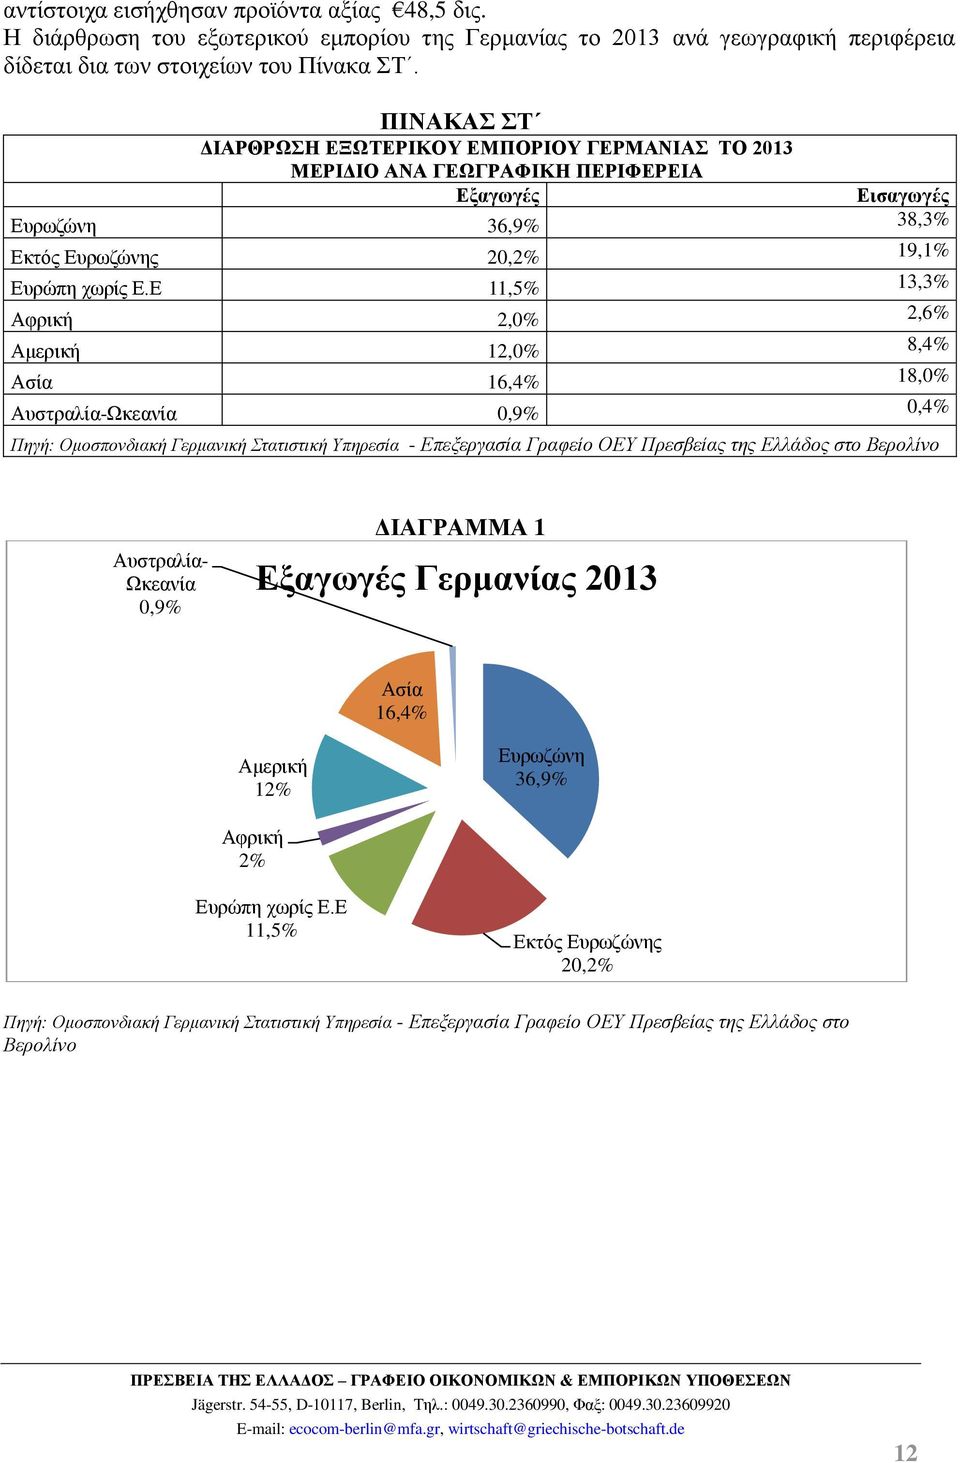 Ε 11,5% 13,3% Αφρική 2,0% 2,6% Αμερική 12,0% 8,4% Ασία 16,4% 18,0% Αυστραλία-Ωκεανία 0,9% 0,4% Πηγή: Ομοσπονδιακή Γερμανική Στατιστική Υπηρεσία - Επεξεργασία Γραφείο ΟΕΥ Πρεσβείας της Ελλάδος στο